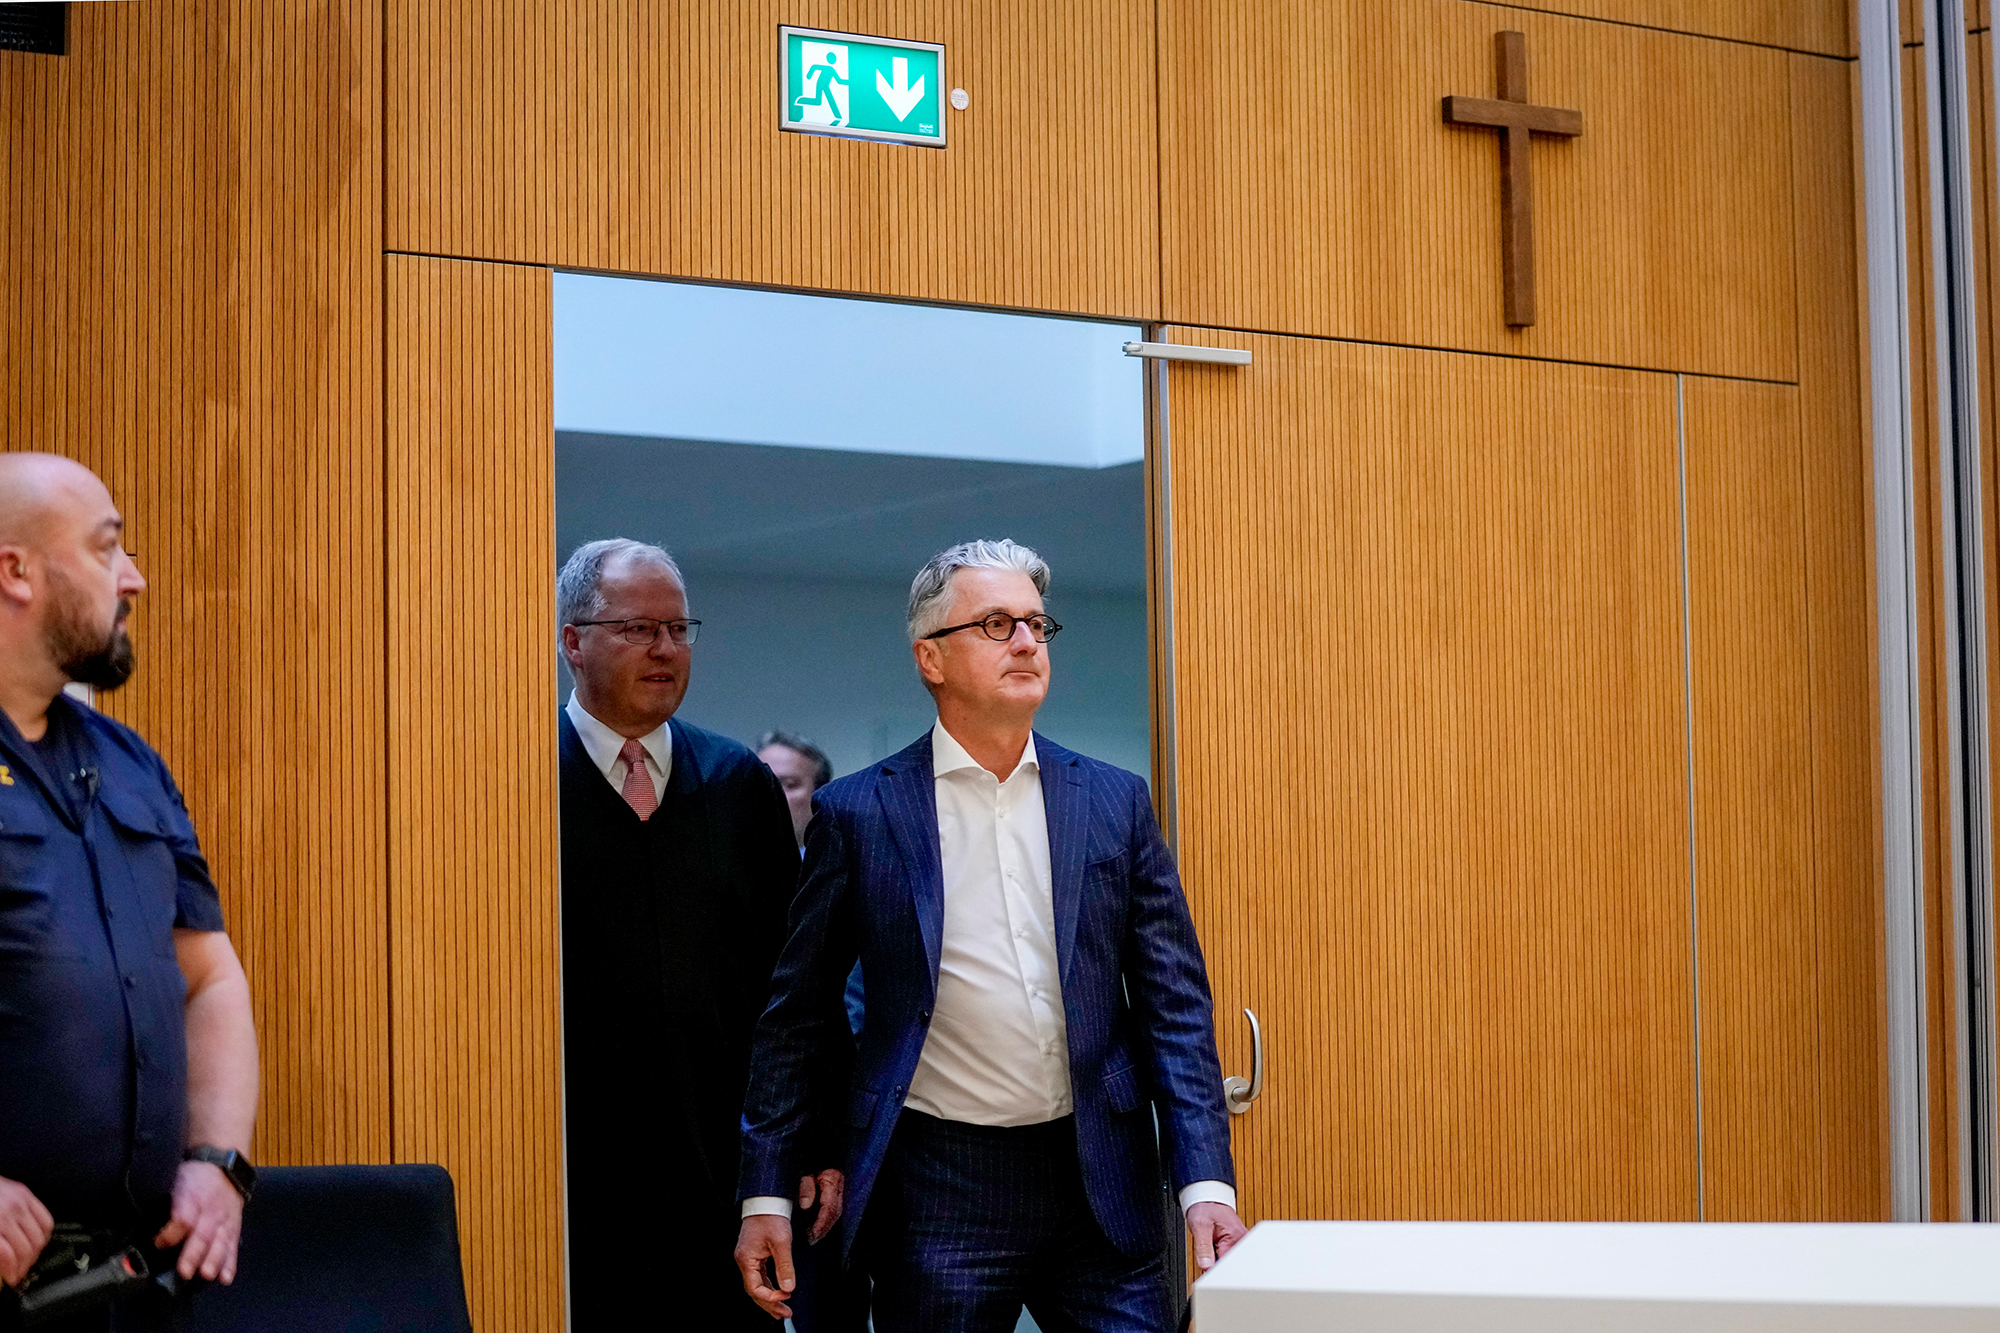 Der ehemalige Vorstandsvorsitzende Rupert Stadler am Landgericht in München (Bild: Matthias Schrader/Pool/AFP)